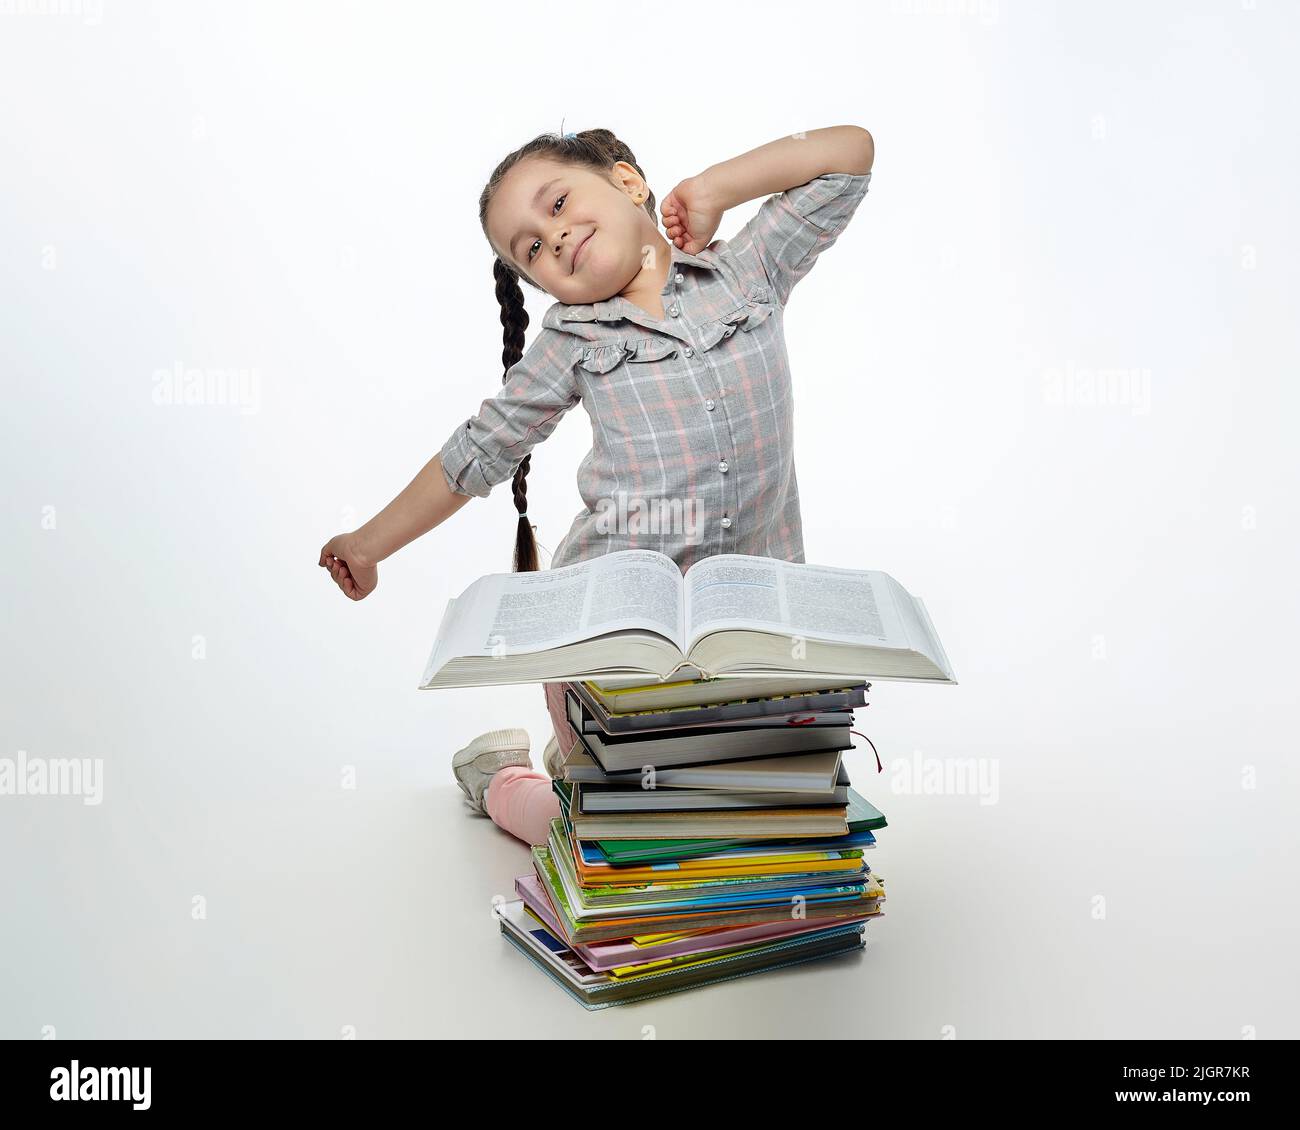 une petite fille fatiguée est assise devant une grande pile de livres et s'étire. Banque D'Images